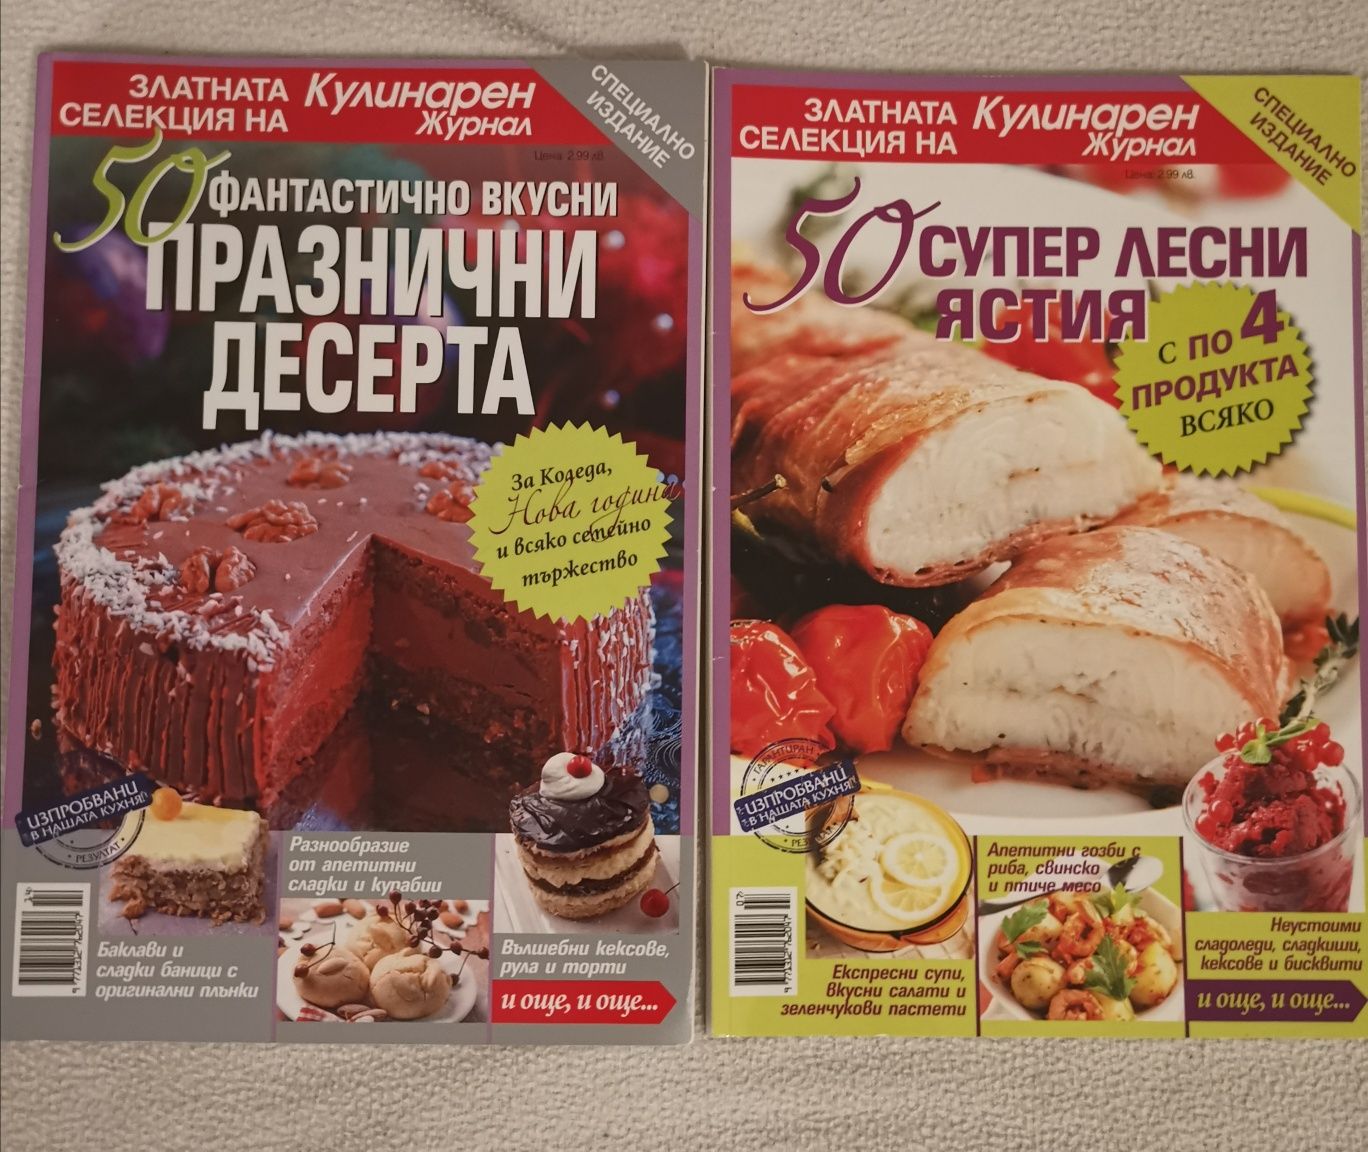 Специални кулинарни издания, по 3 лв. всяко, нови са